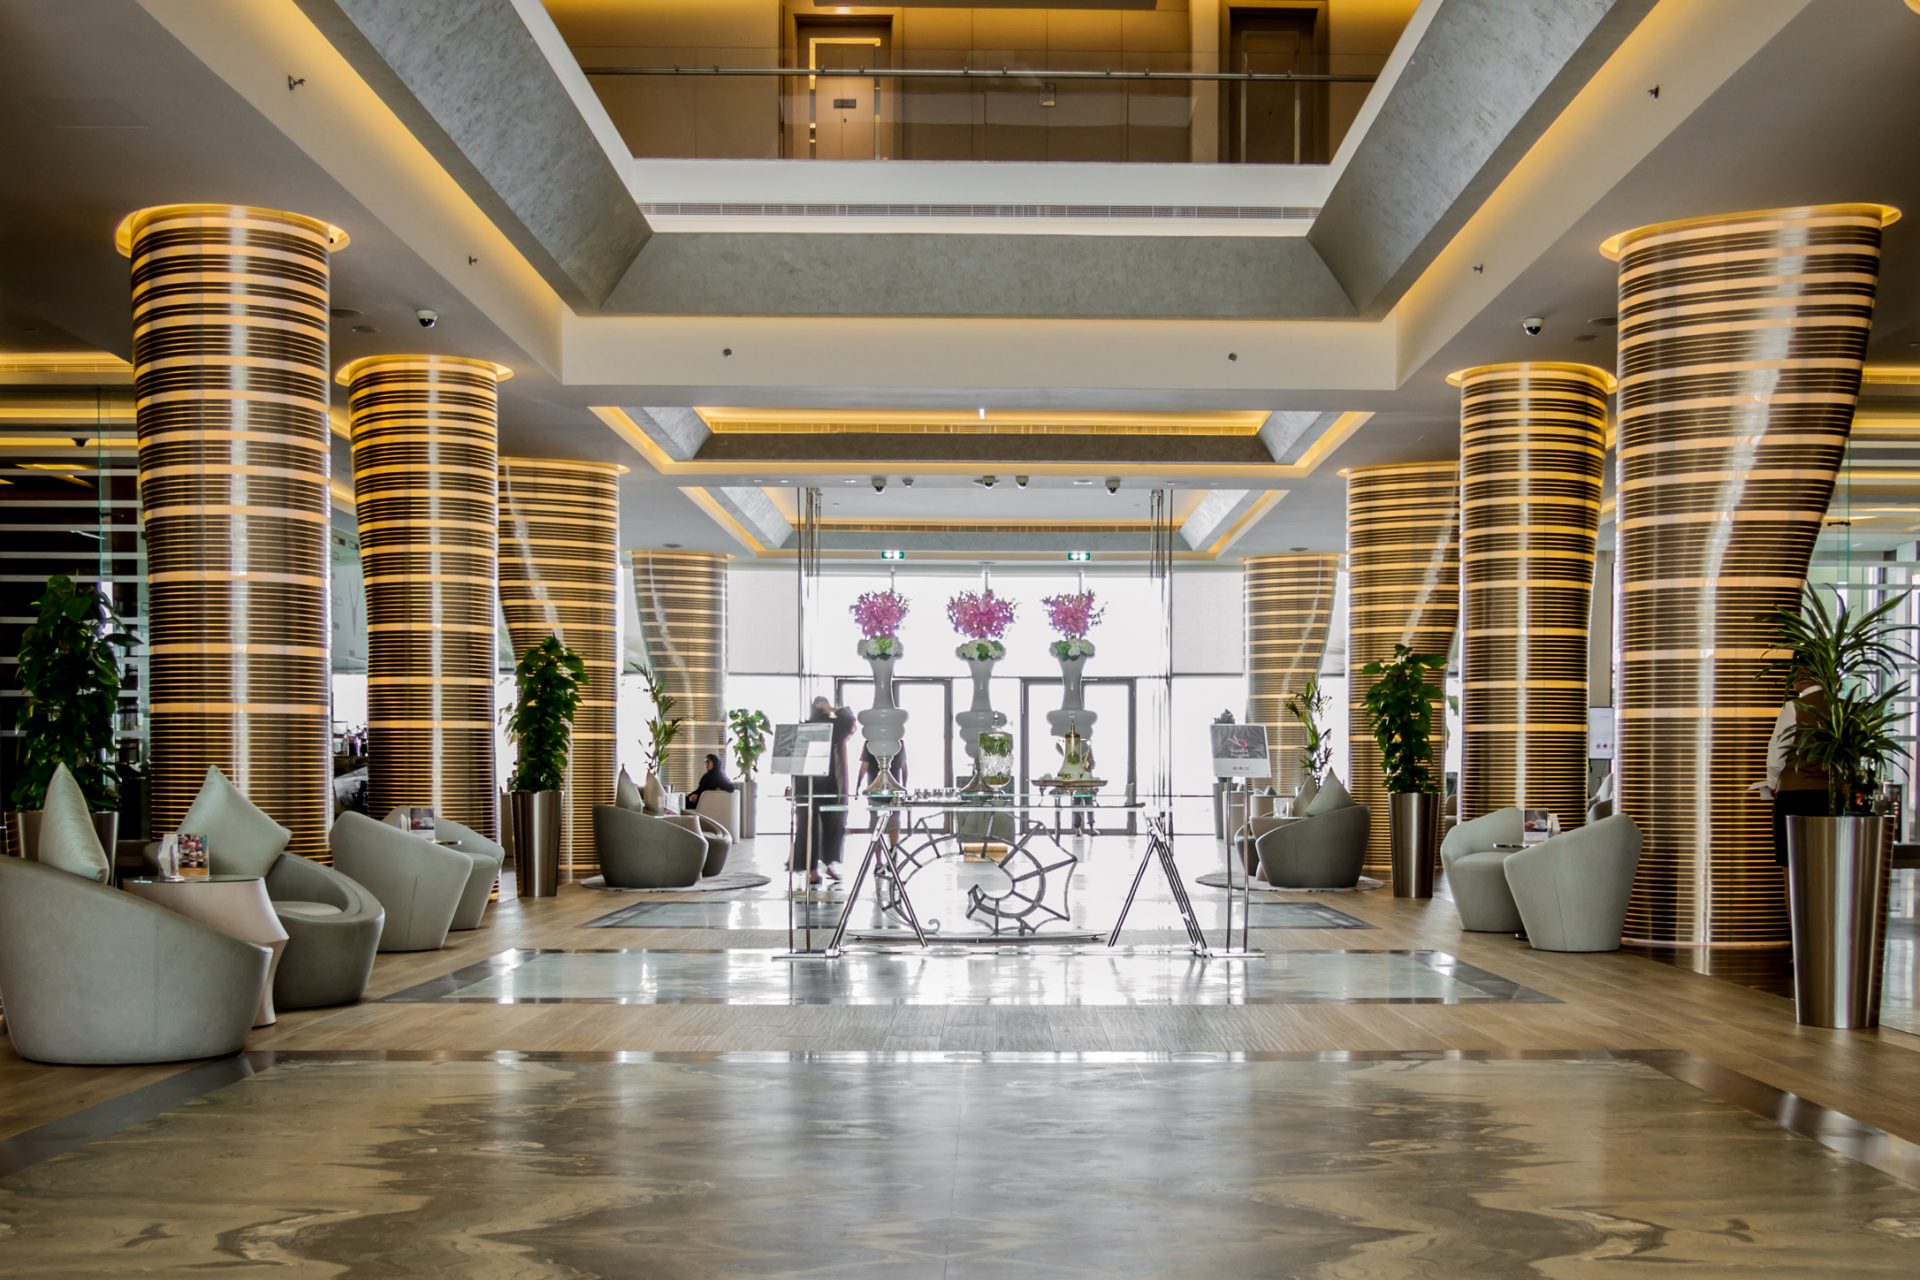 Royal m Hotel & Resort Abu Dhabi 5*. Royal m Hotel & Resort Abu Dhabi. Абу Даби лакшери. Royal m hotel abu dhabi 5